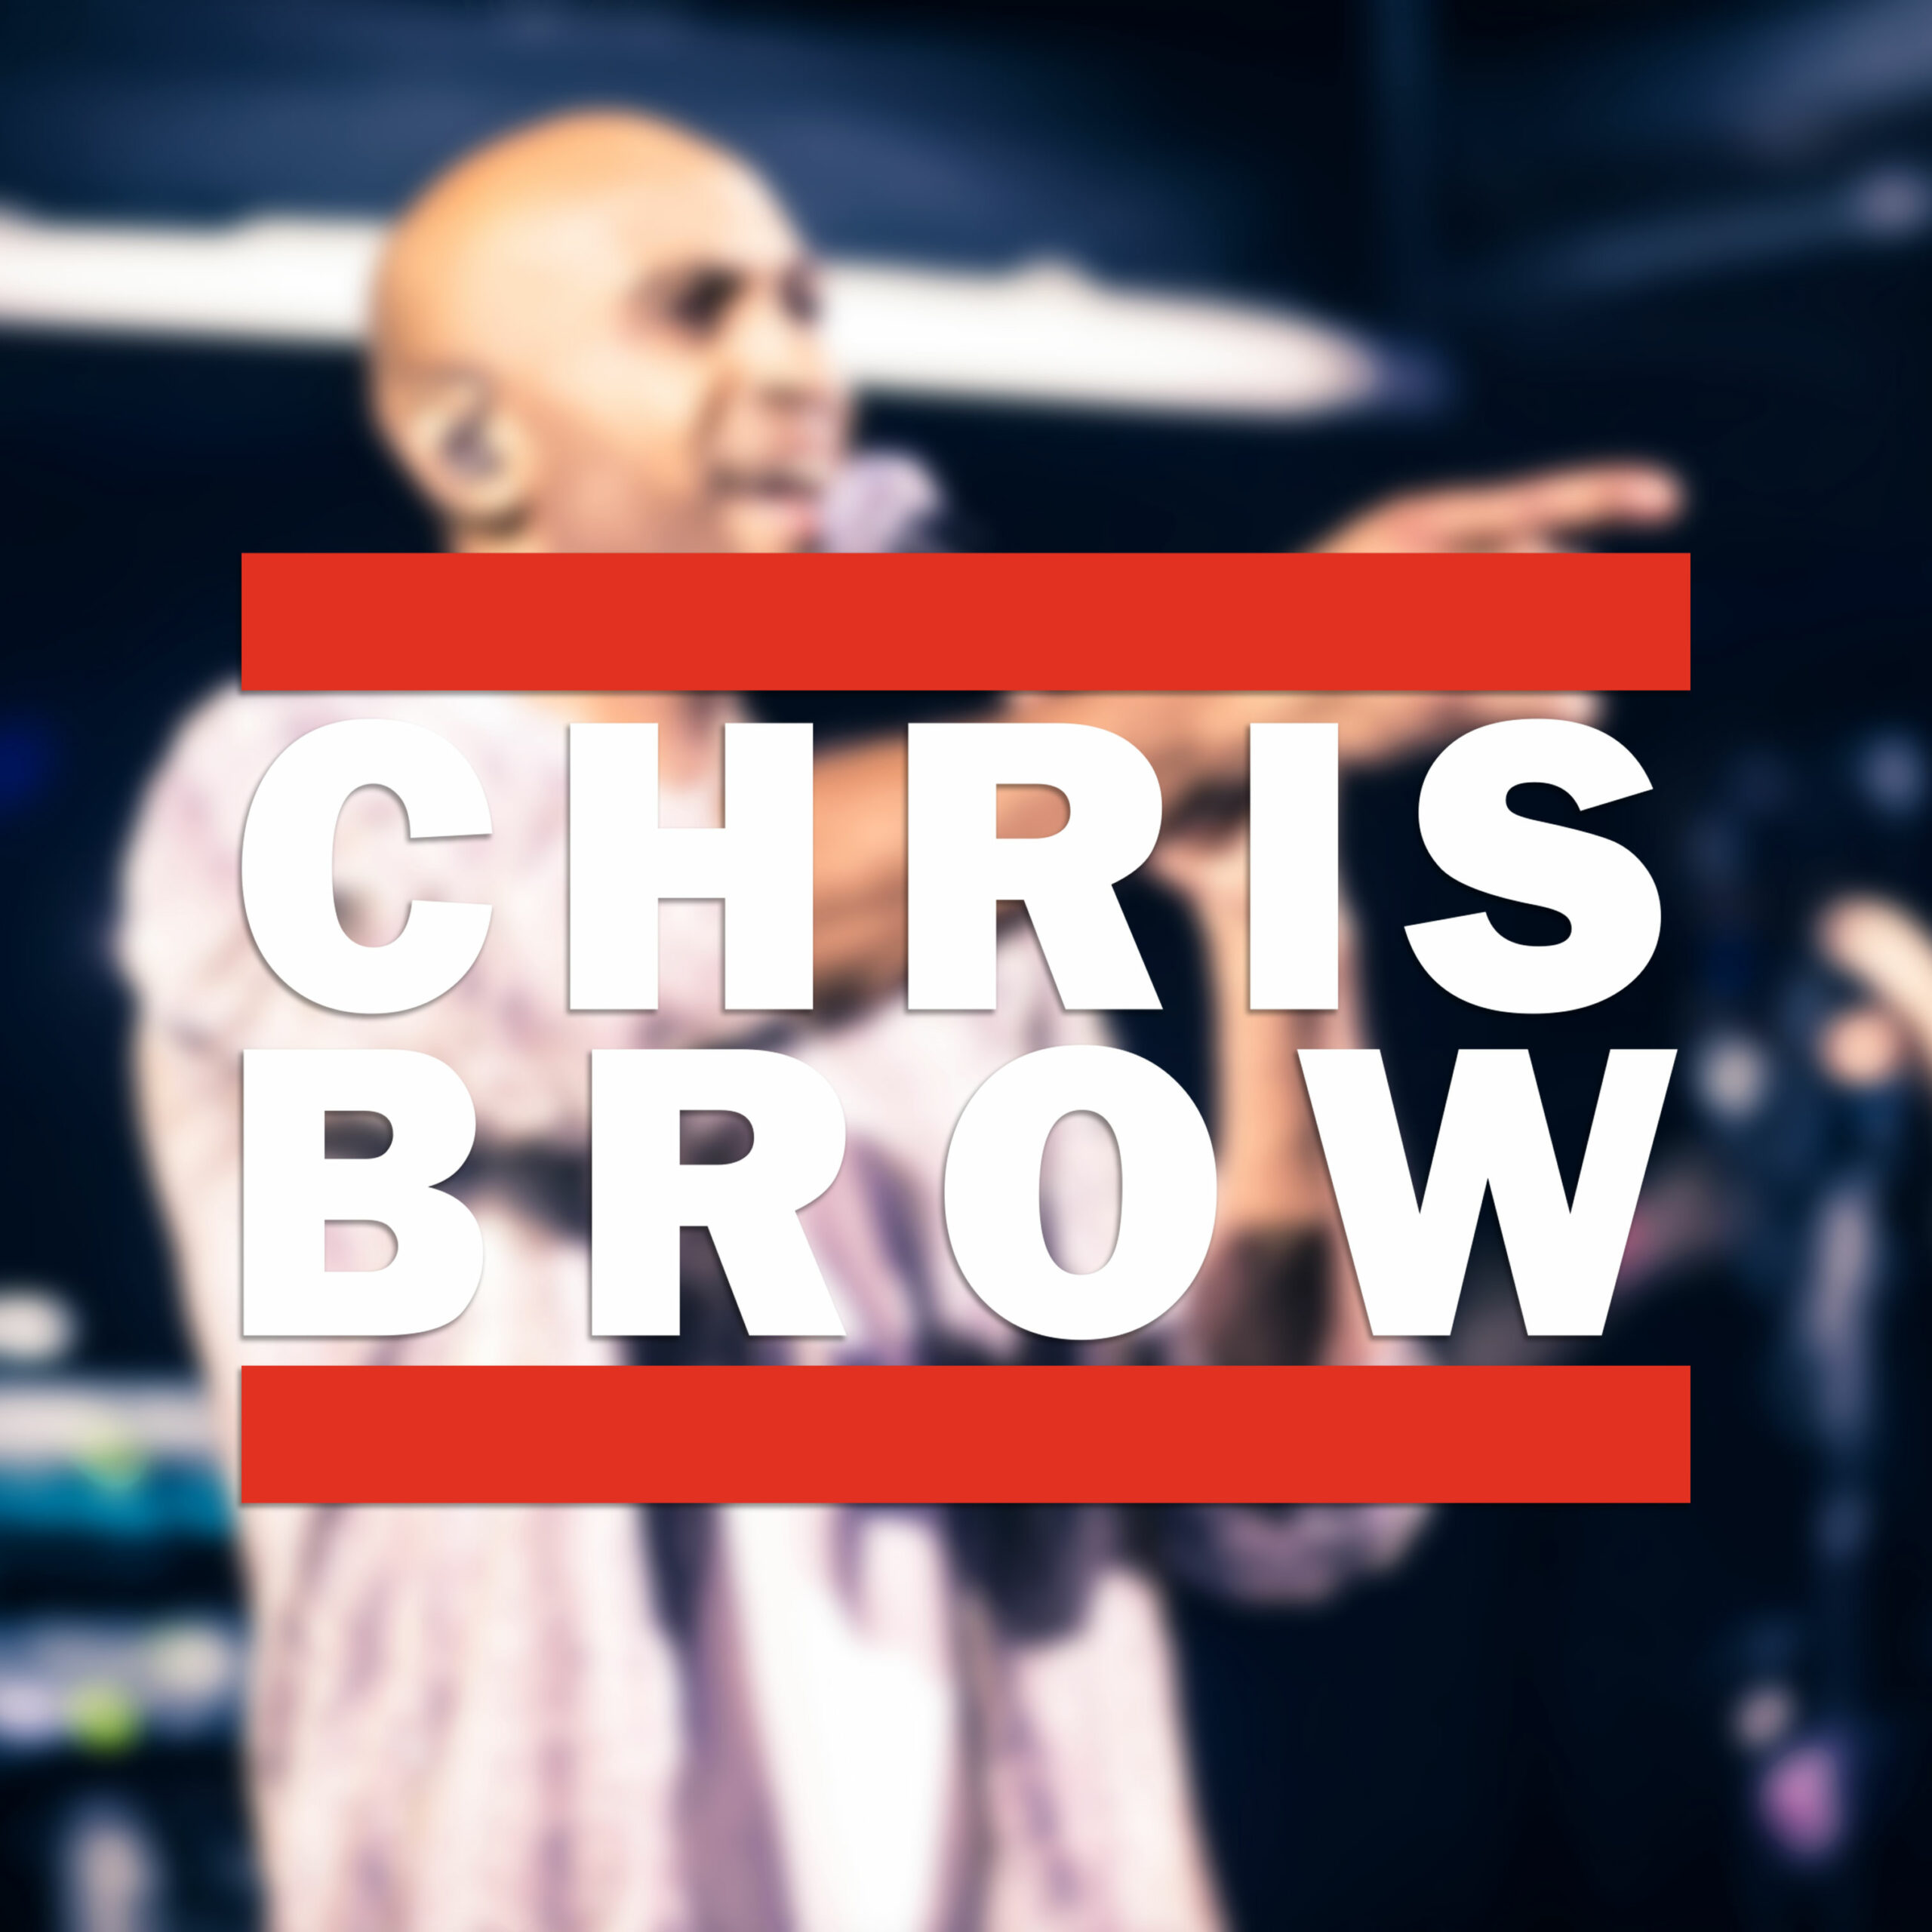 Chris Brow